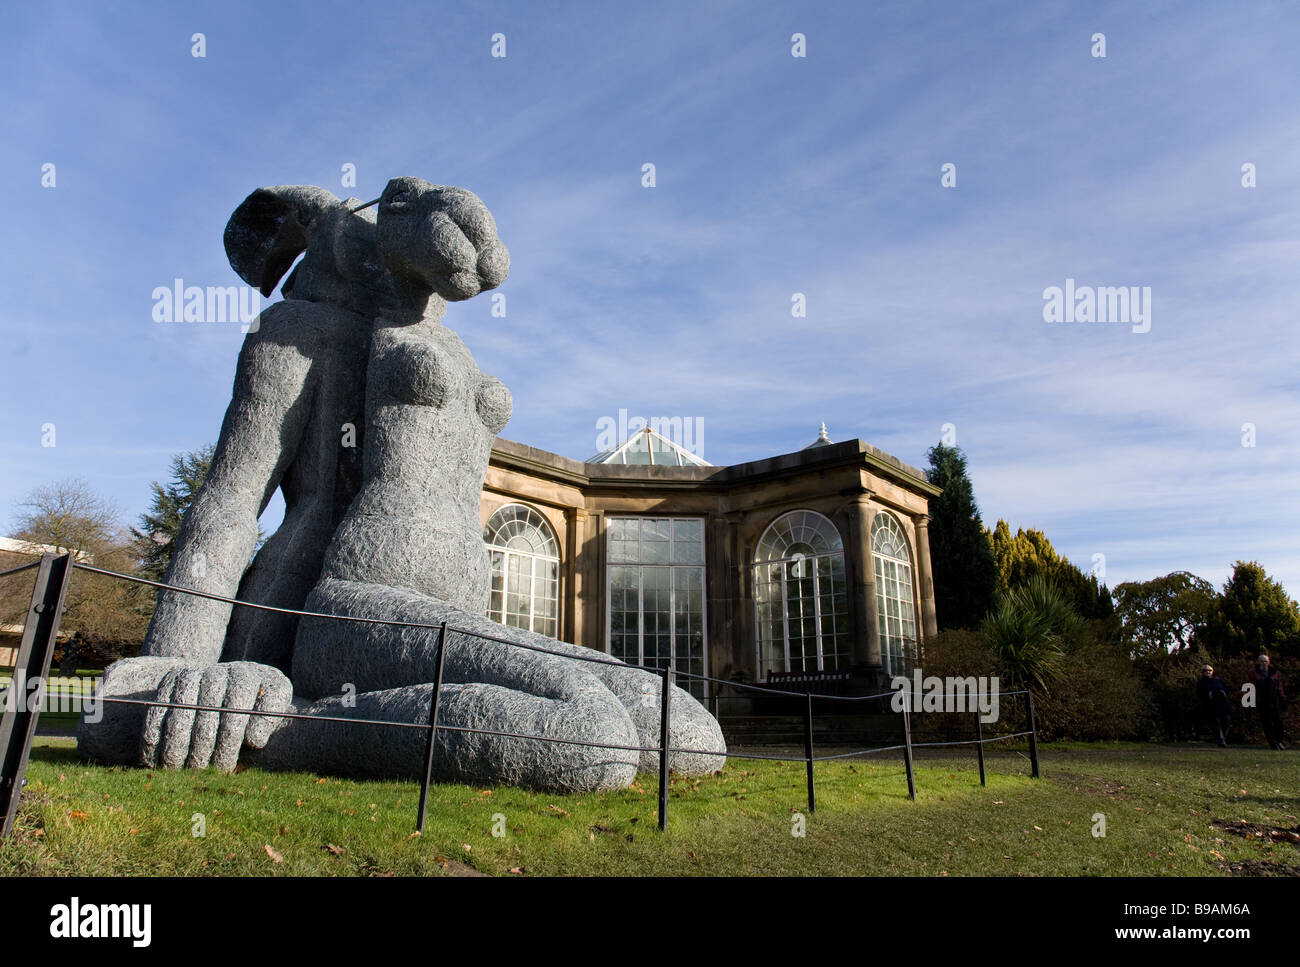 Frau Hase oder sitzen, eine Skulptur in Yorkshire Sculpture Park, einer der führenden europäischen Open-Air-Galerien Stockfoto